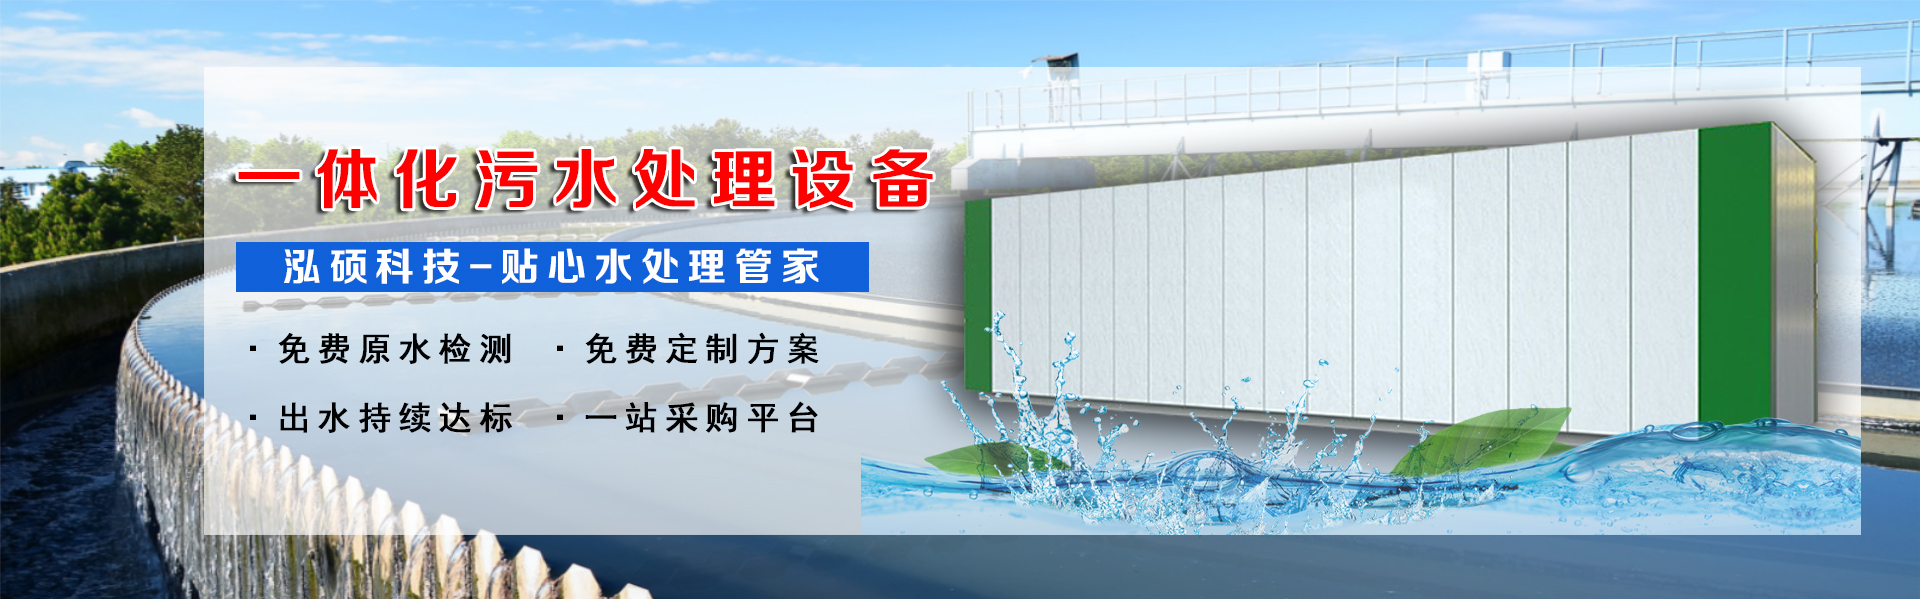 集裝箱式污水處理設備